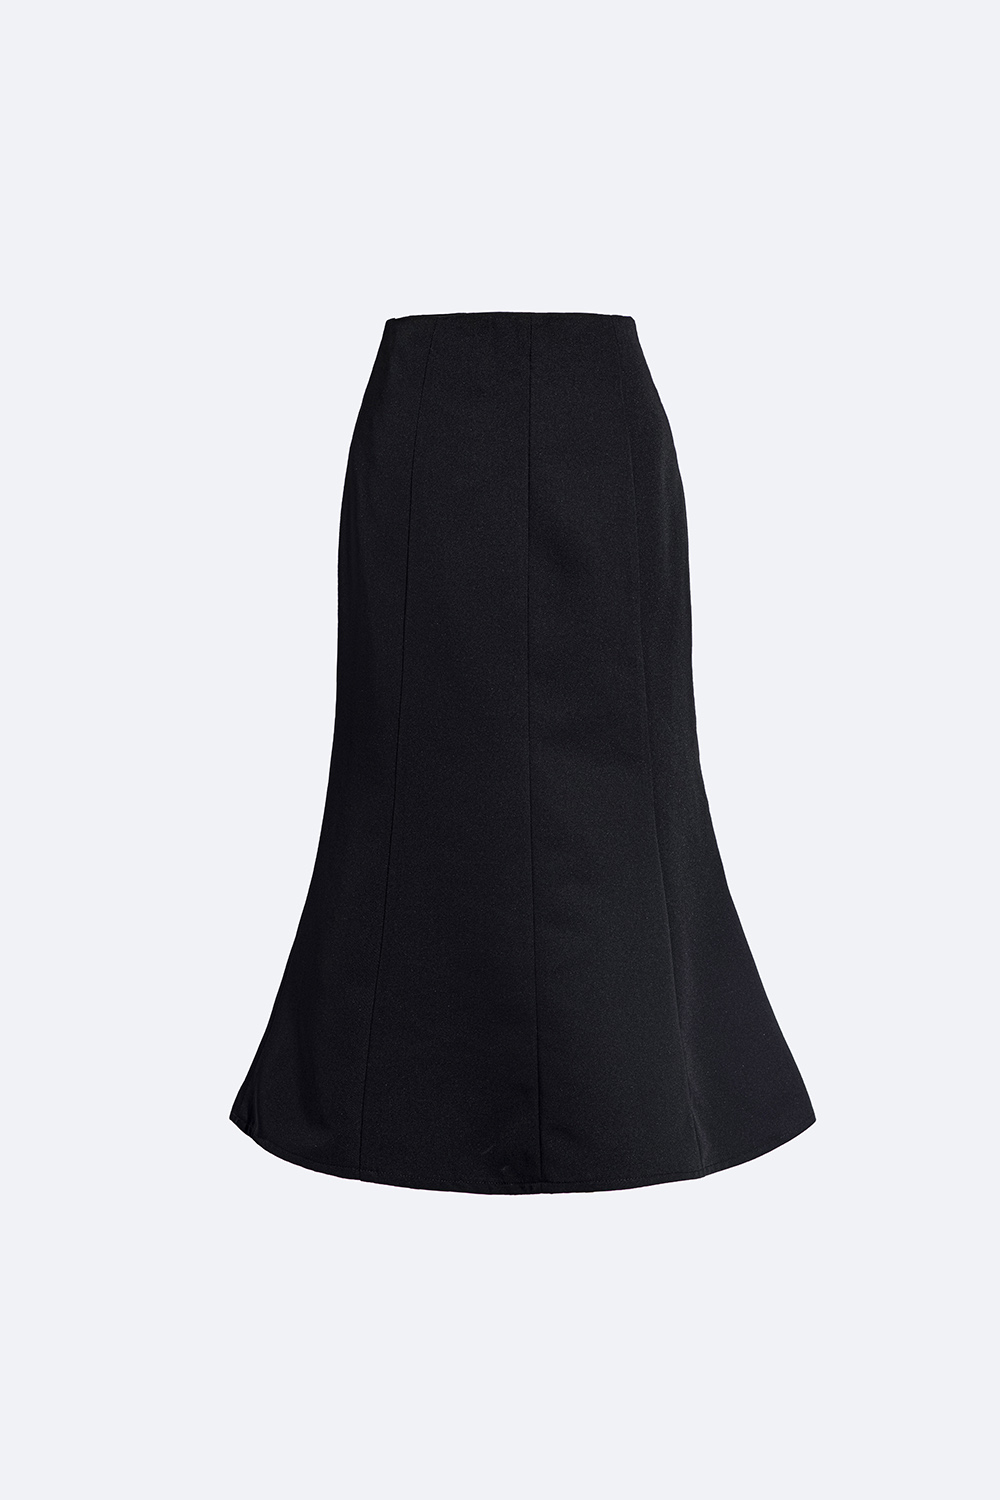 Chân váy ngắn caro phối túi CV06-22 | Thời trang công sở K&K Fashion